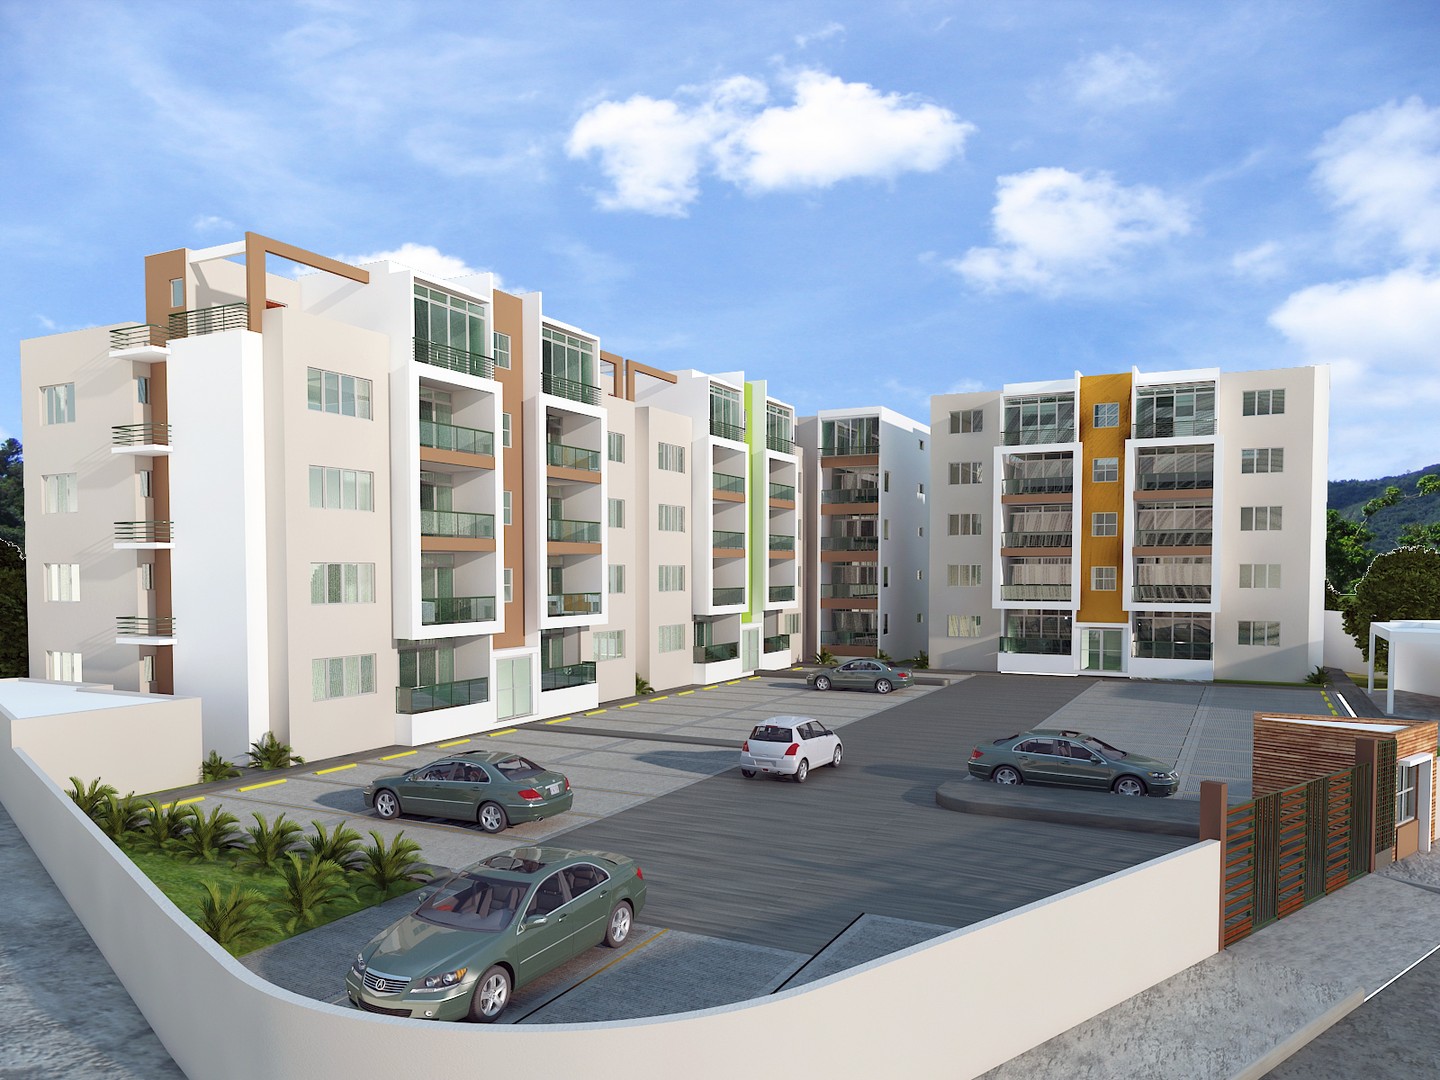 apartamentos - Vendo Apartamento nuevo listo, Mirador del este , Santo Domingo Este